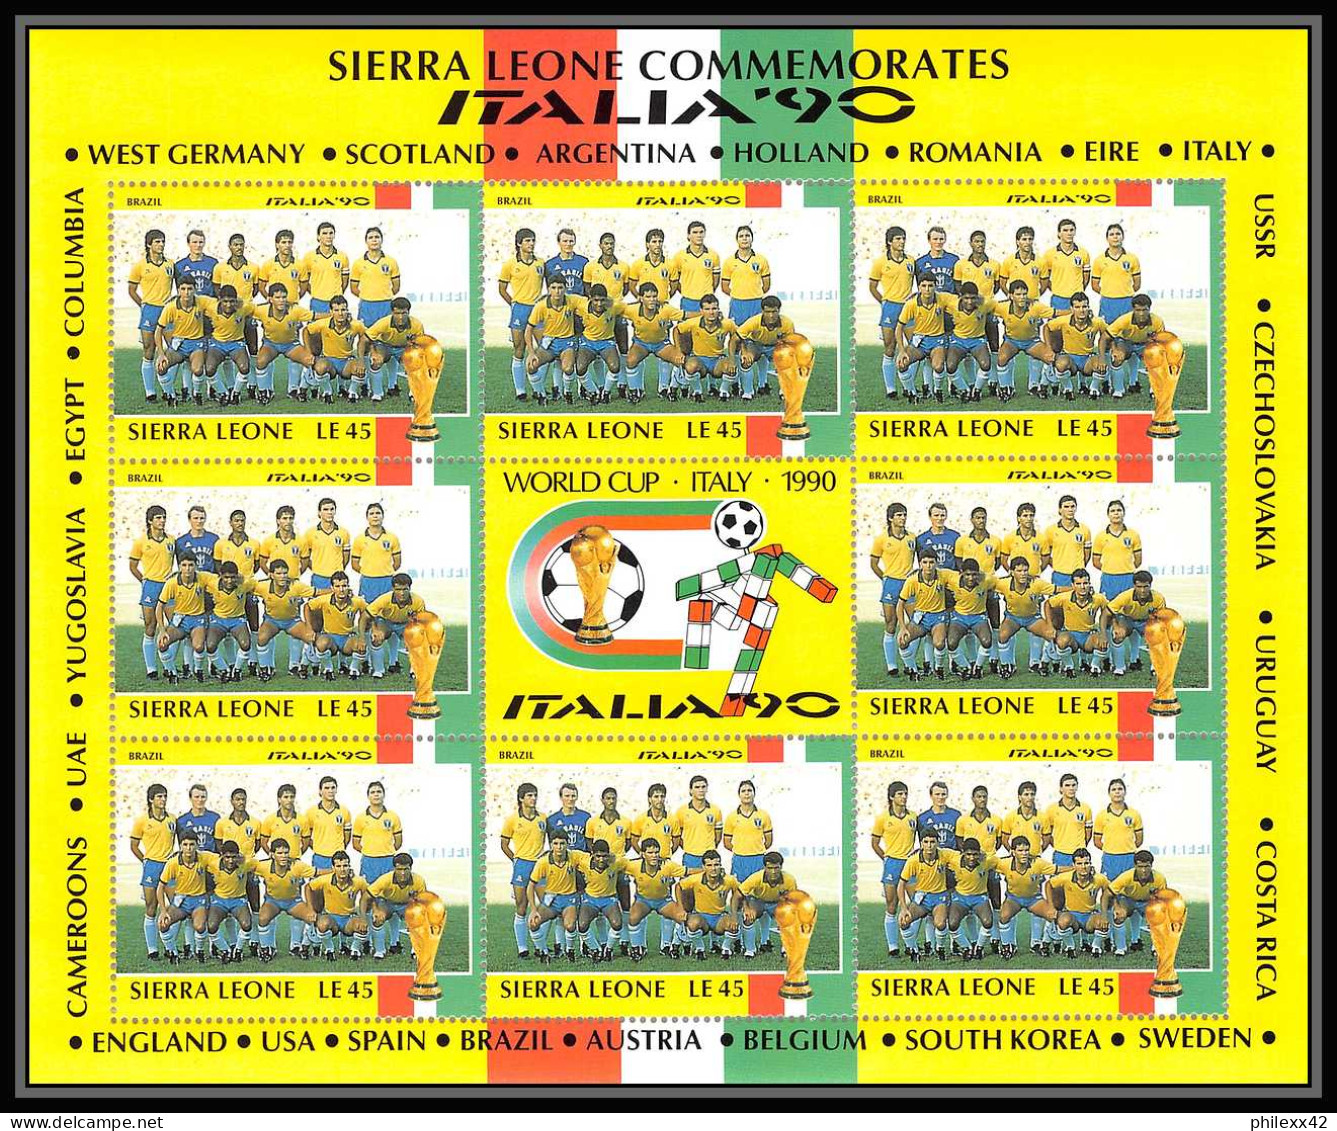 042 Football (Soccer) Italia 90 Neuf ** MNH - Sierra Leone 24 Blocs - 1990 – Italy